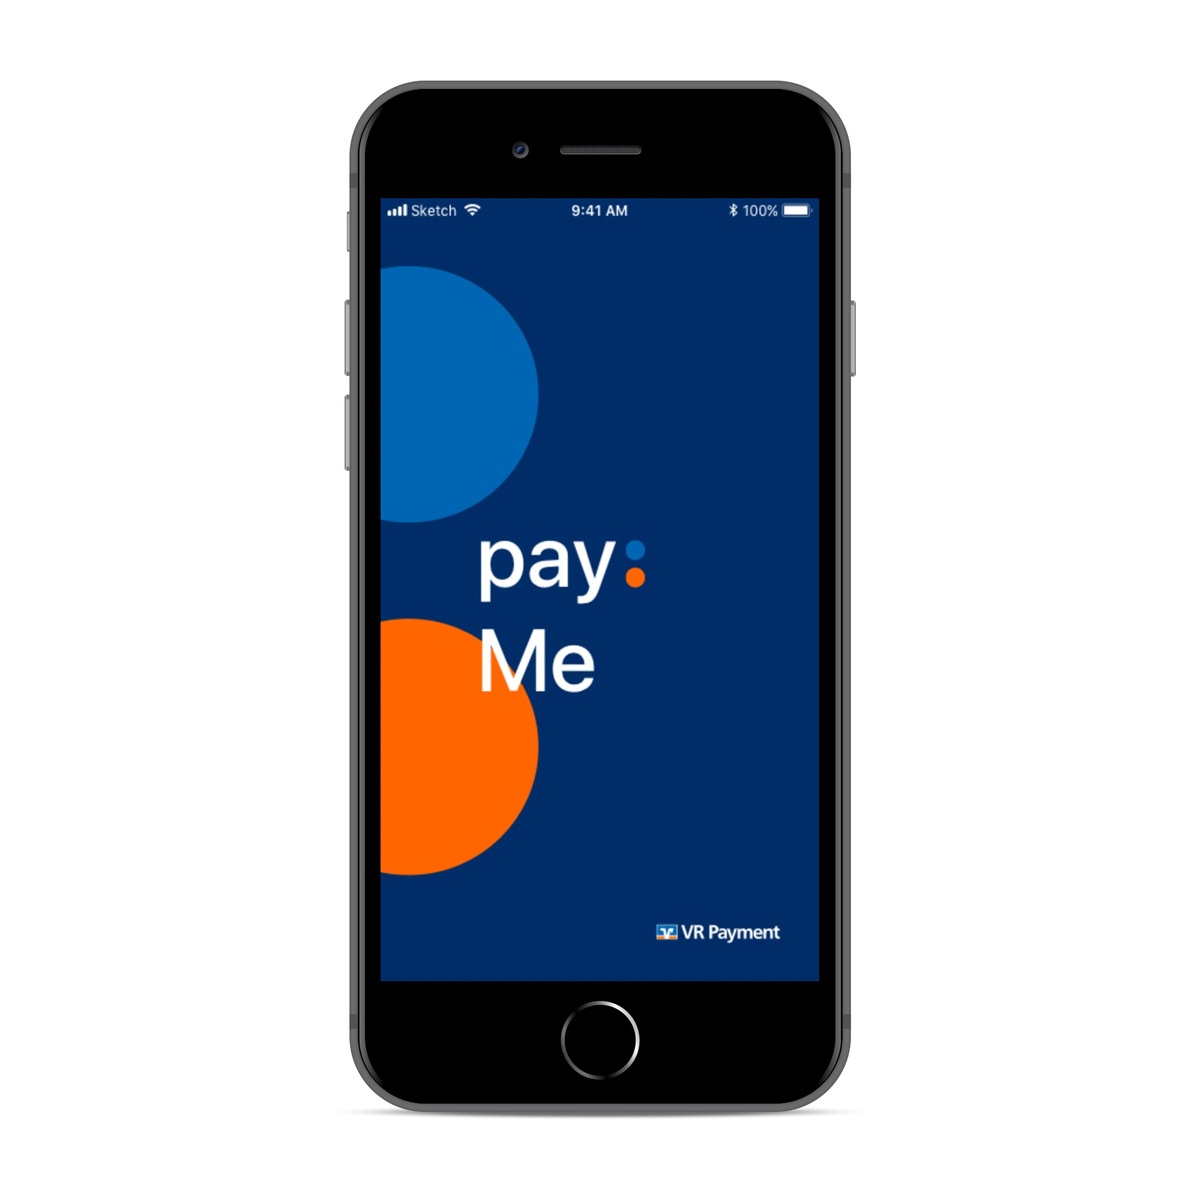 VR Payment startet eigene App für Kartenzahlungen Presseportal